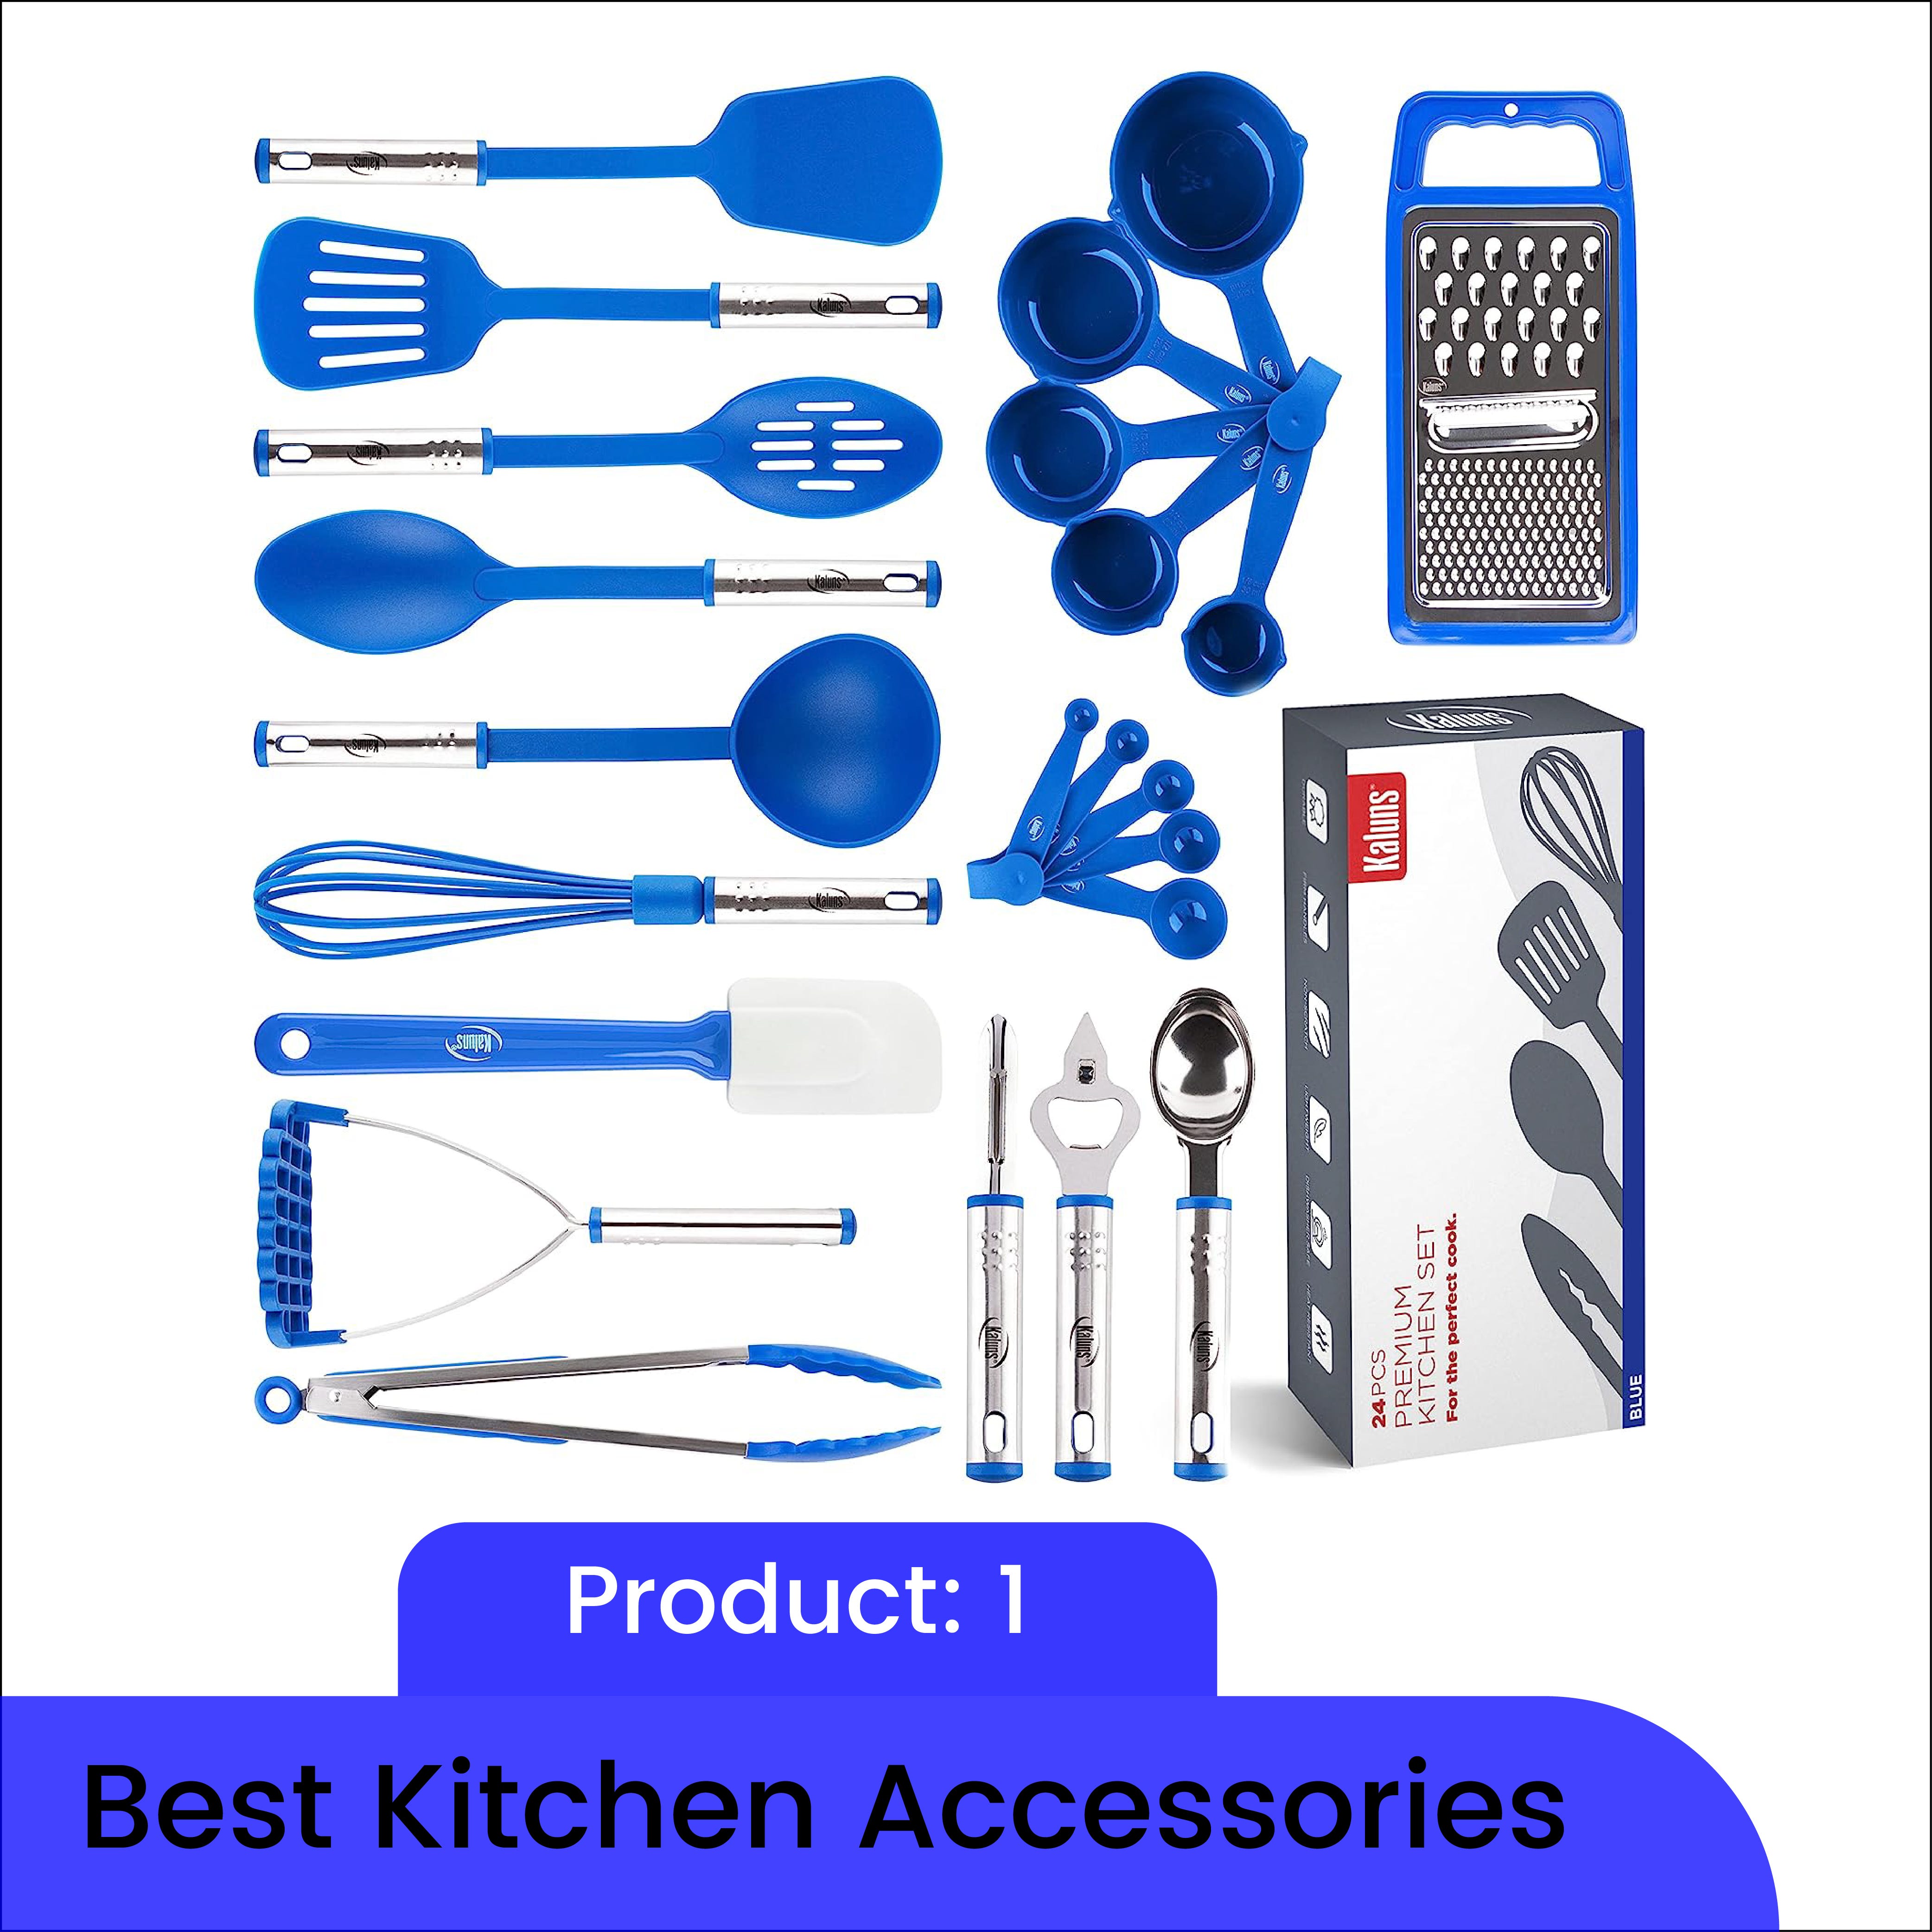 Best Kitchen Accessories 